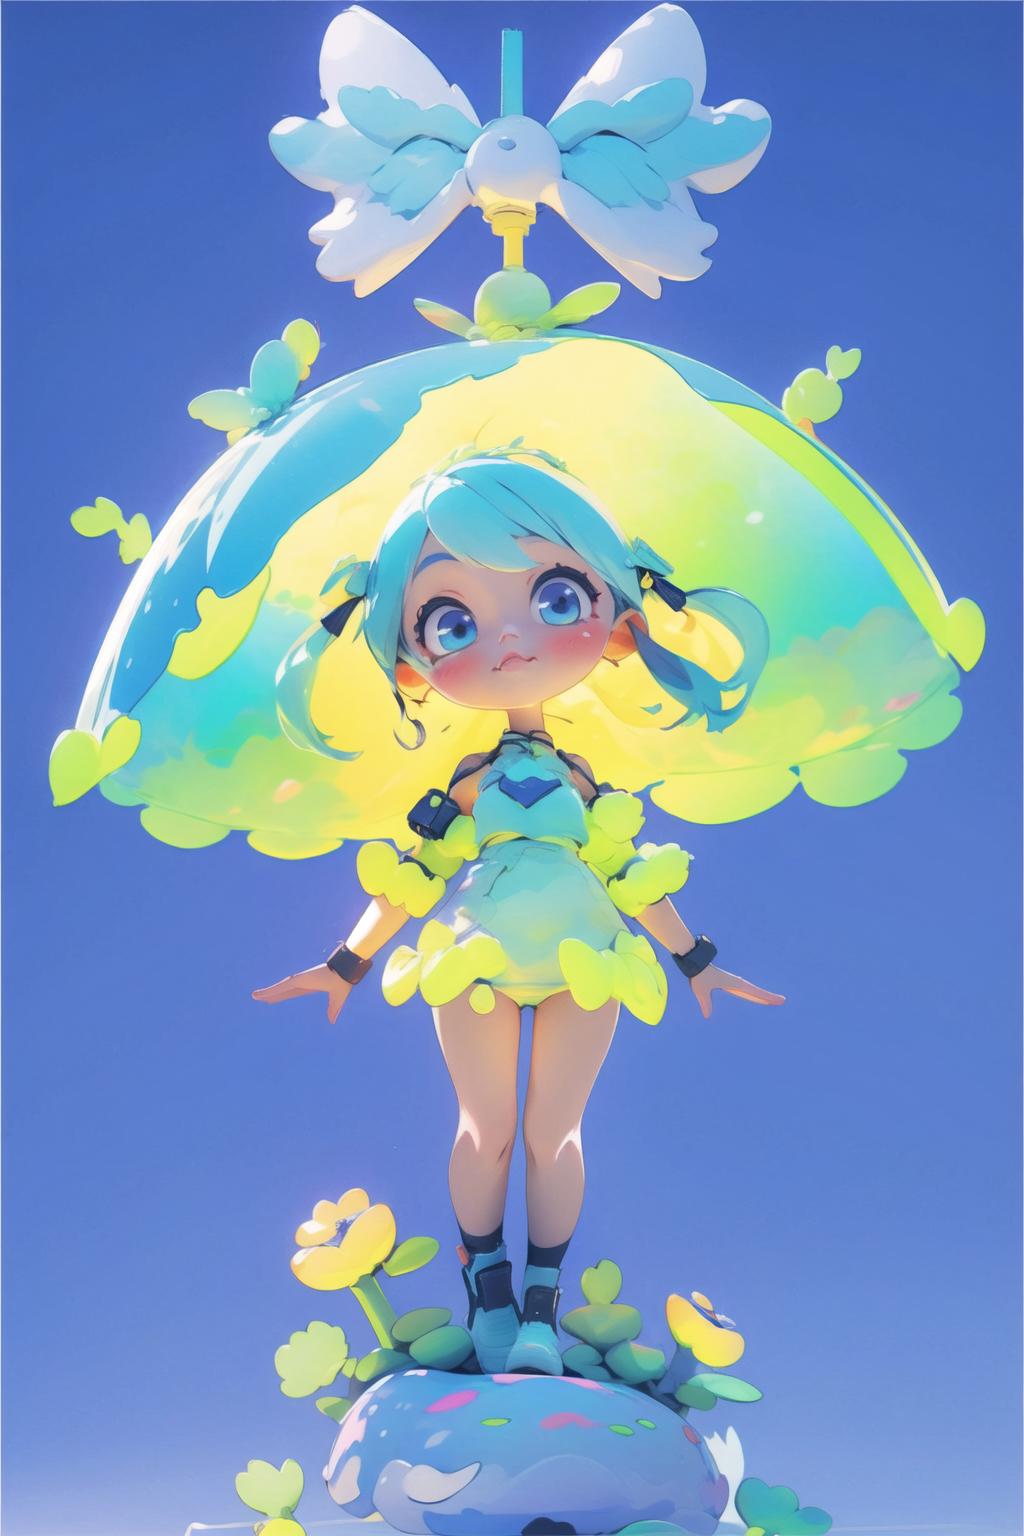 A cartoon image of a girl holding a yellow umbrella.